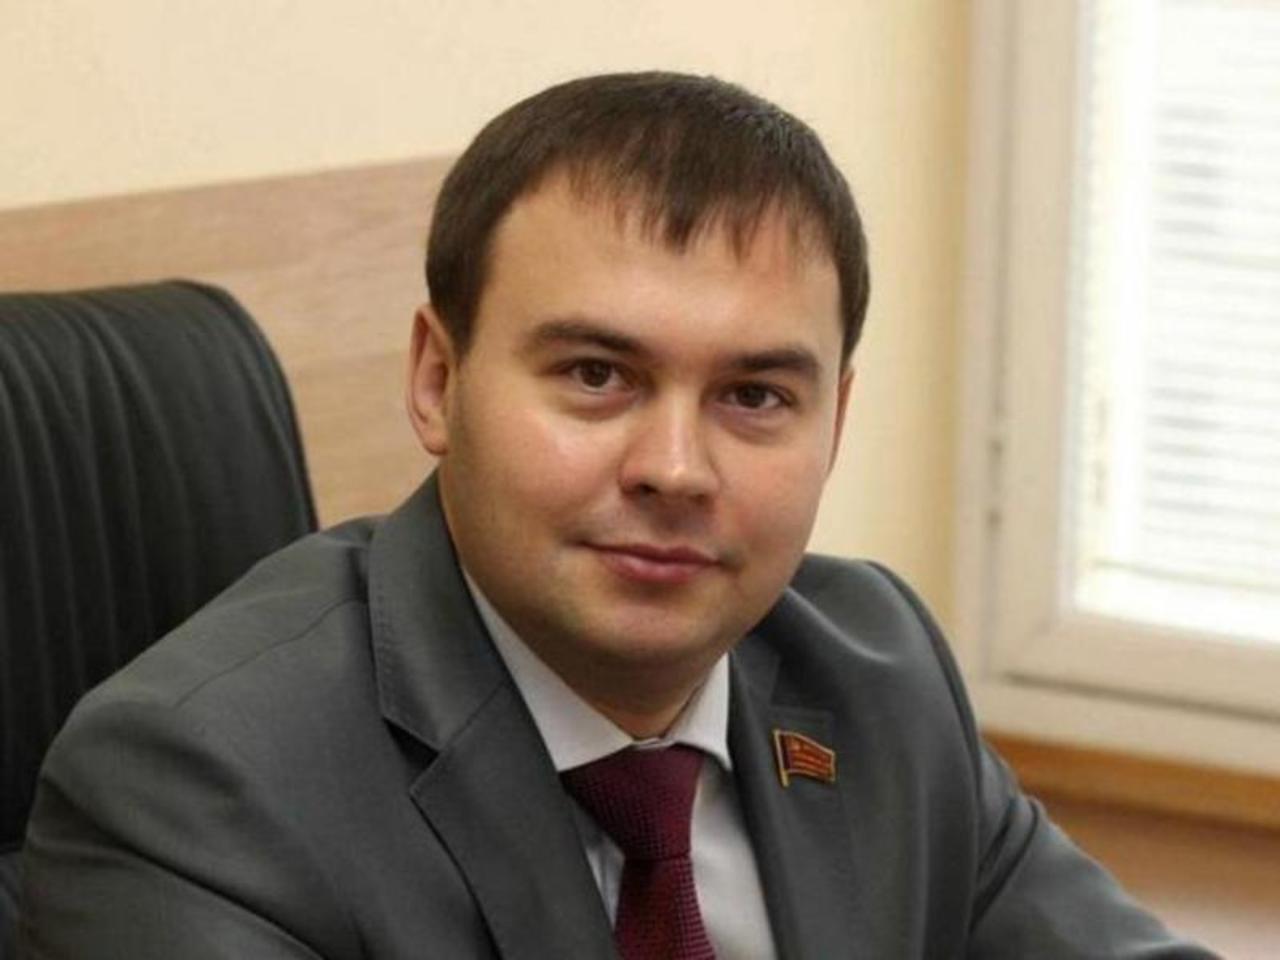 Юрий Афонин: «Мы, коммунисты, изначально предупреждали о пагубности этой сделки»